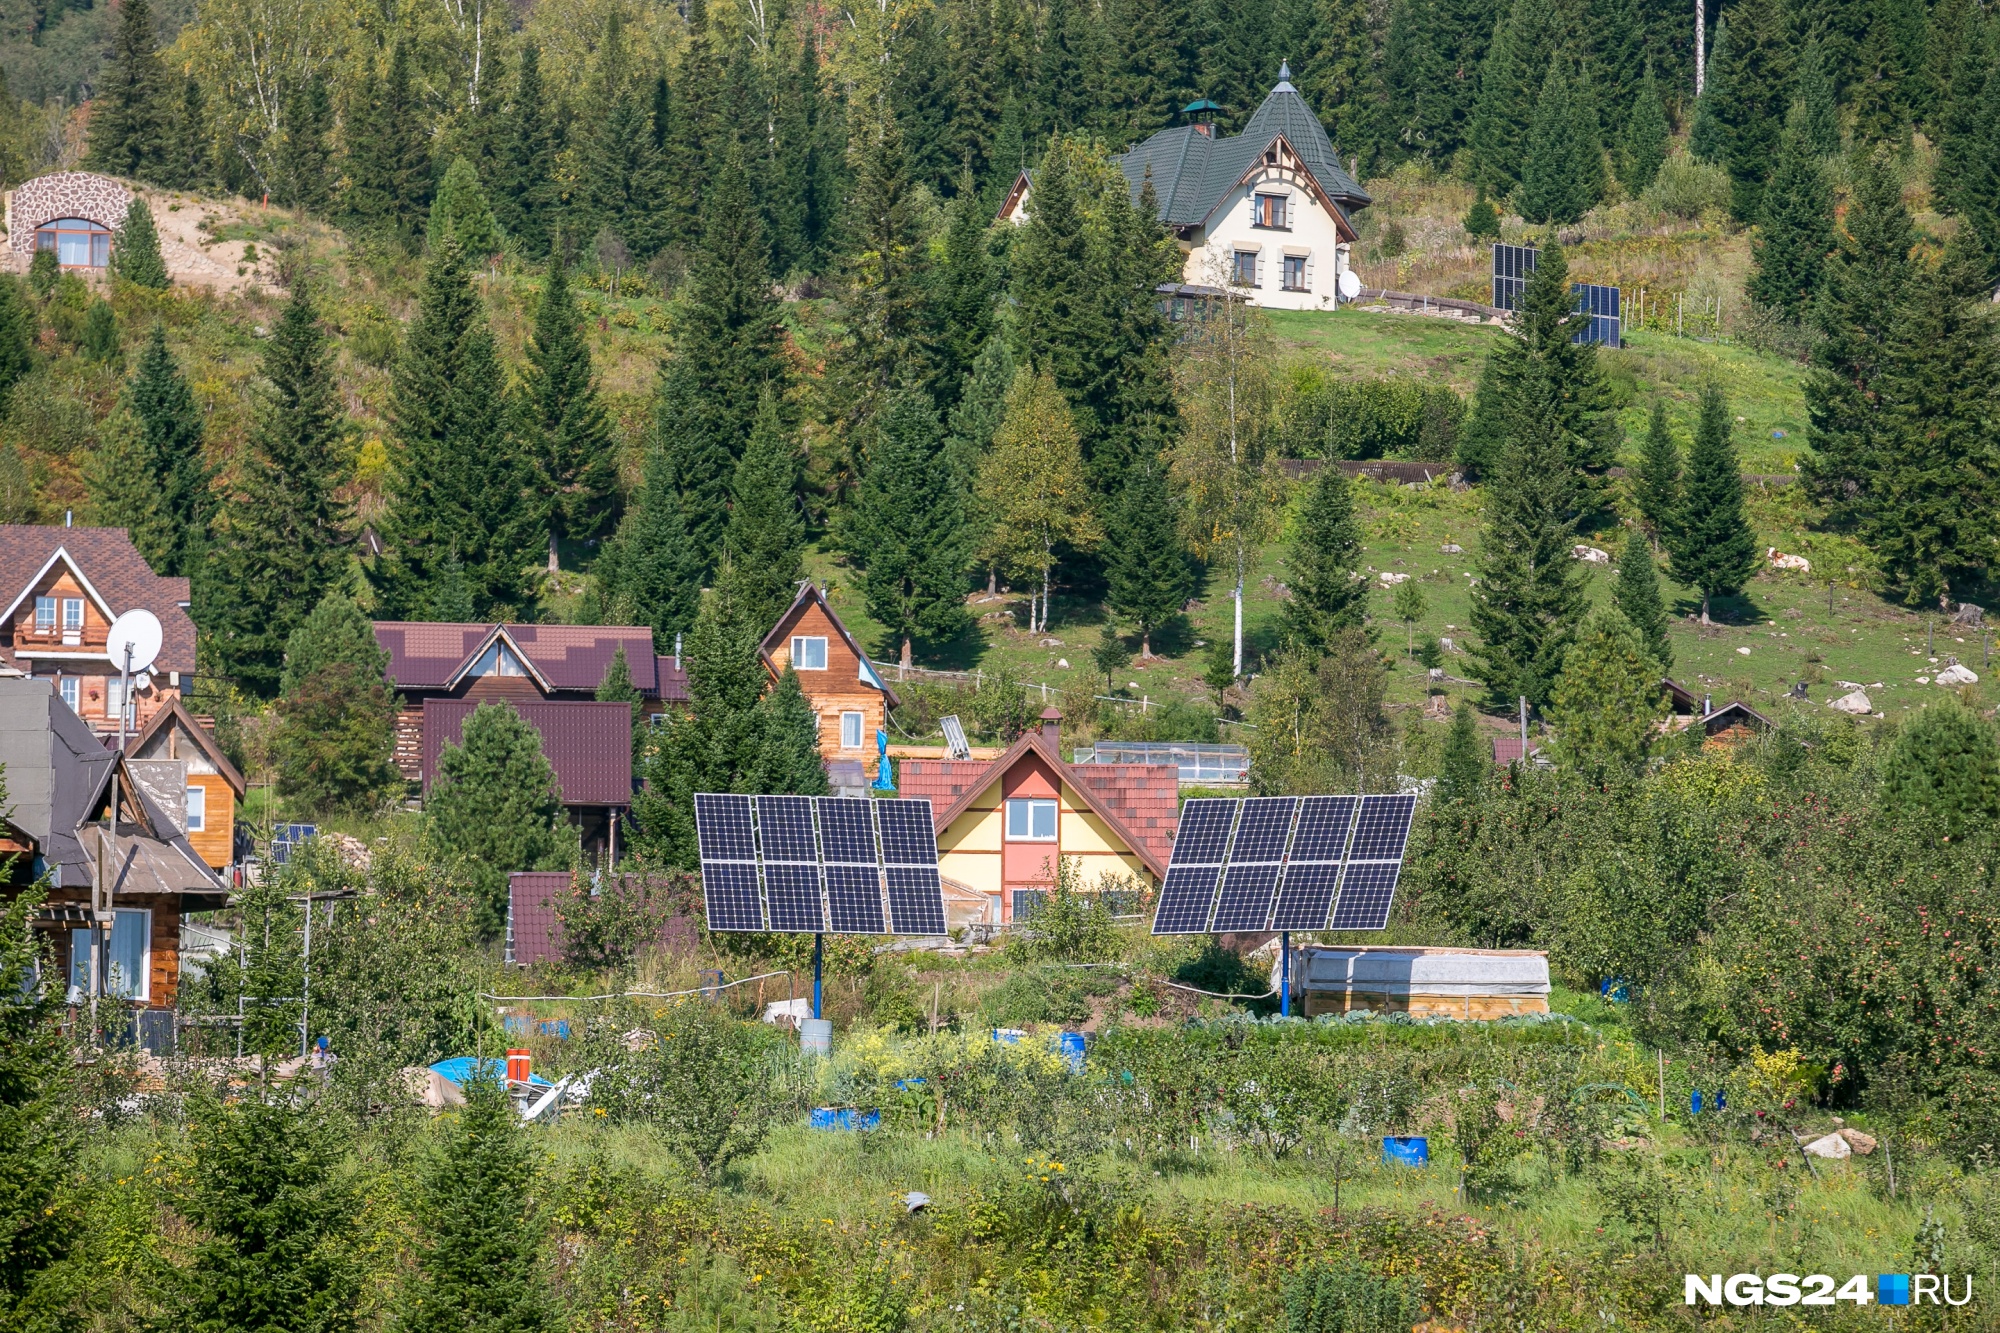 ЛЭП к поселку не протянуты — у каждого дома есть солнечная панель